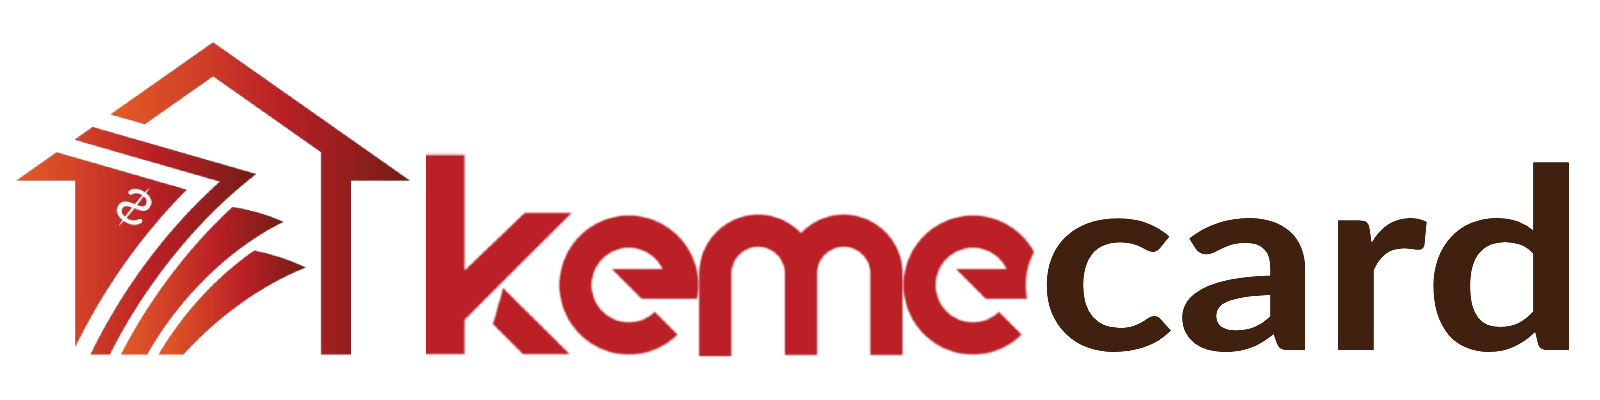 kemecard-logo